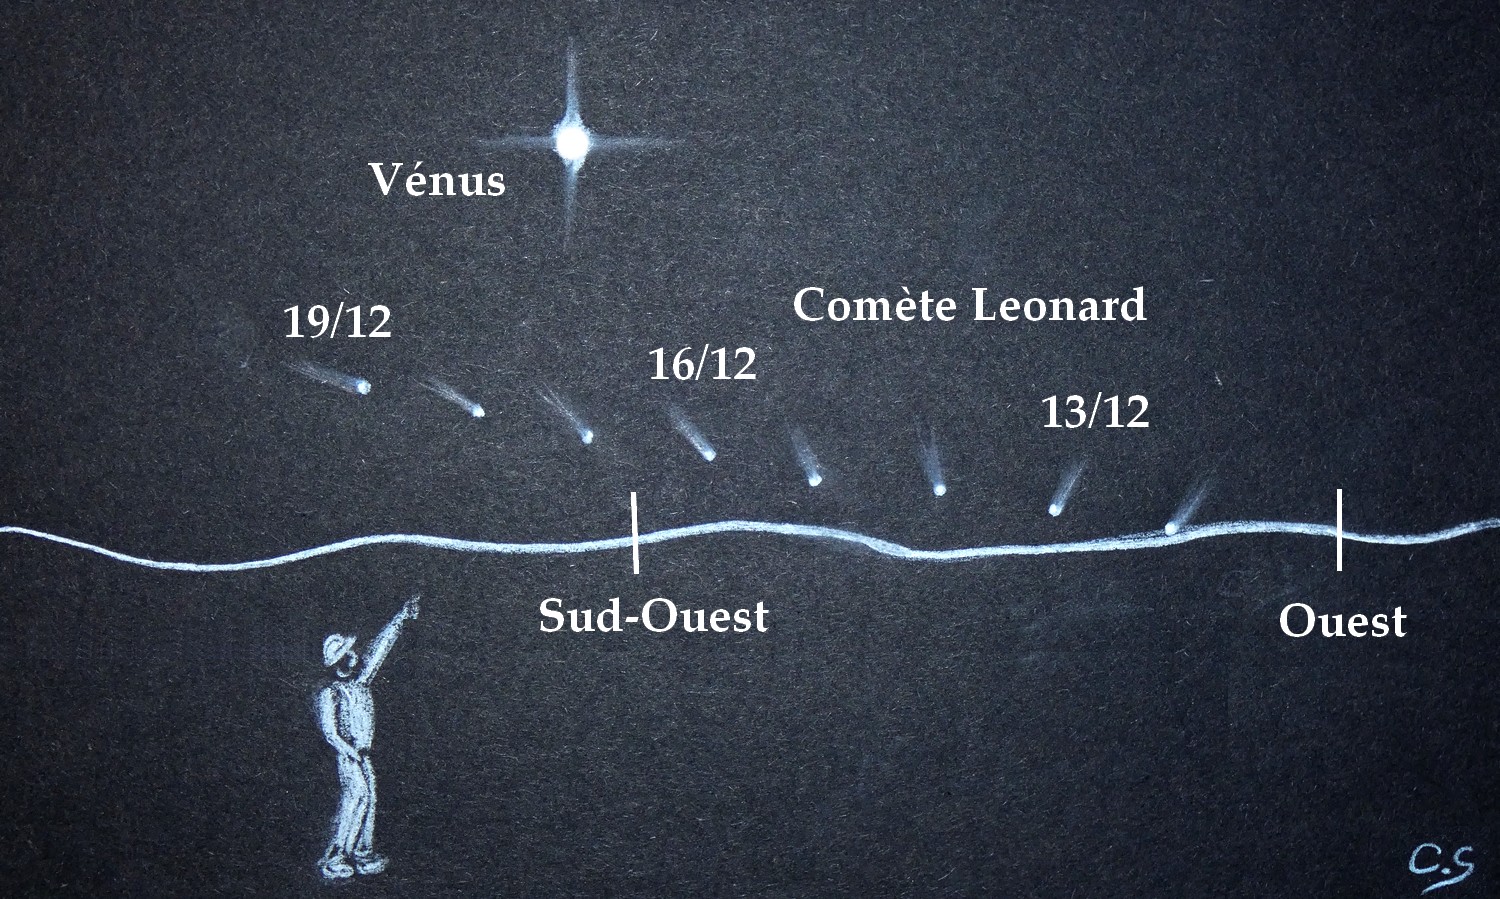 Observa el cometa Leonard por la noche desde el lado de Venus